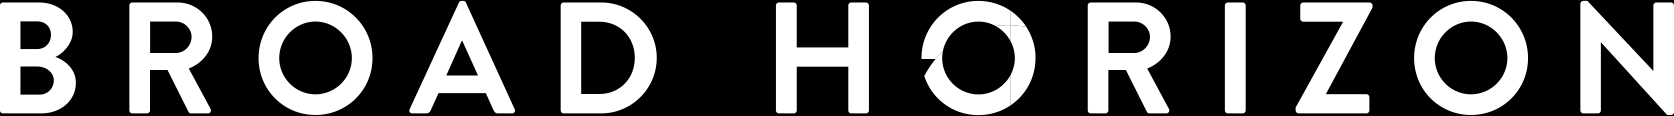 Broad Horizon logo